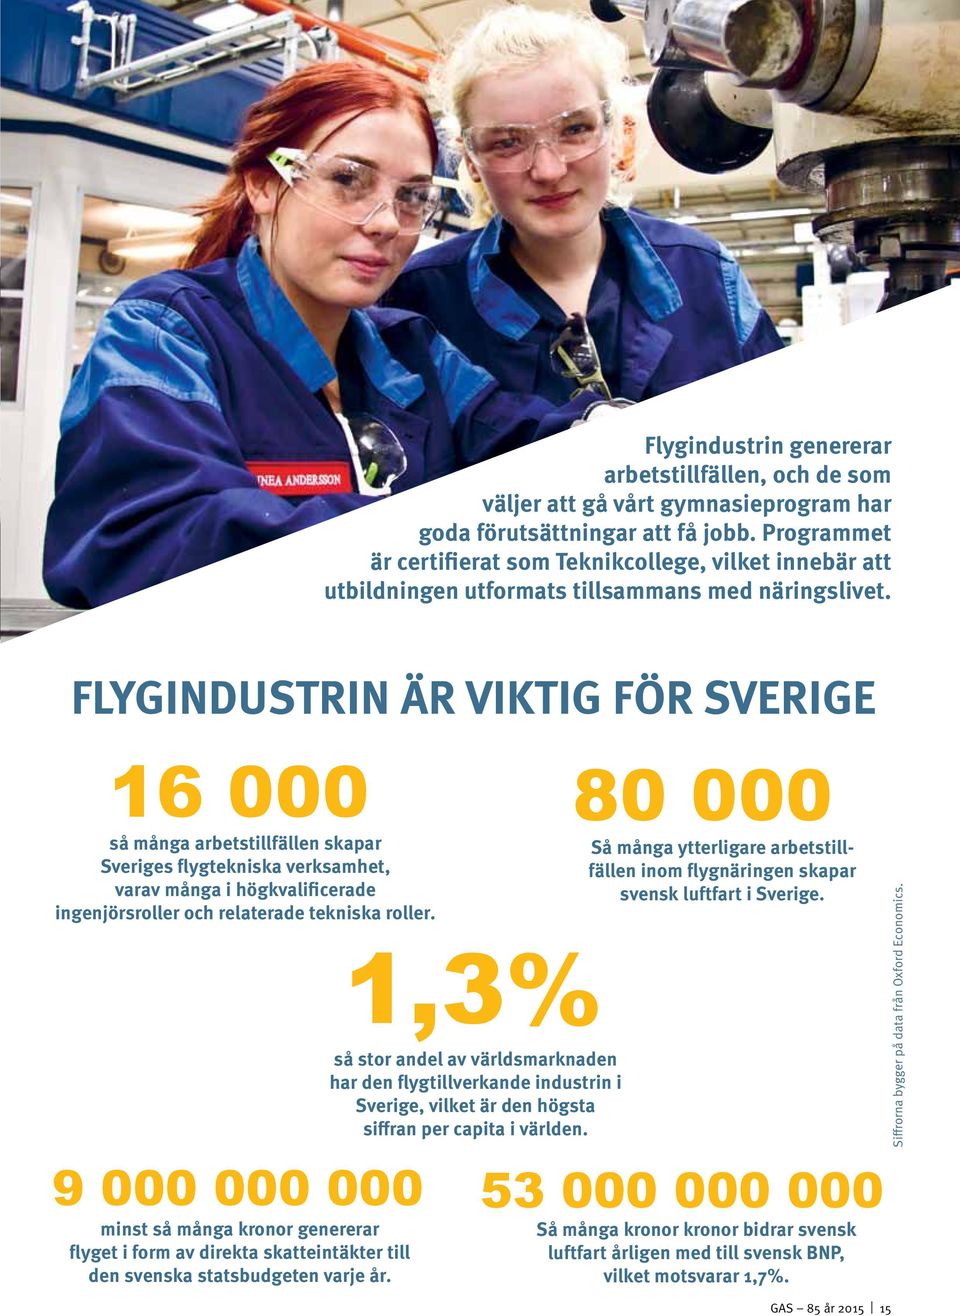 FLYGINDUSTRIN ÄR VIKTIG FÖR SVERIGE 16 000 så många arbetstillfällen skapar Sveriges flygtekniska verksamhet, varav många i högkvalificerade ingenjörsroller och relaterade tekniska roller.